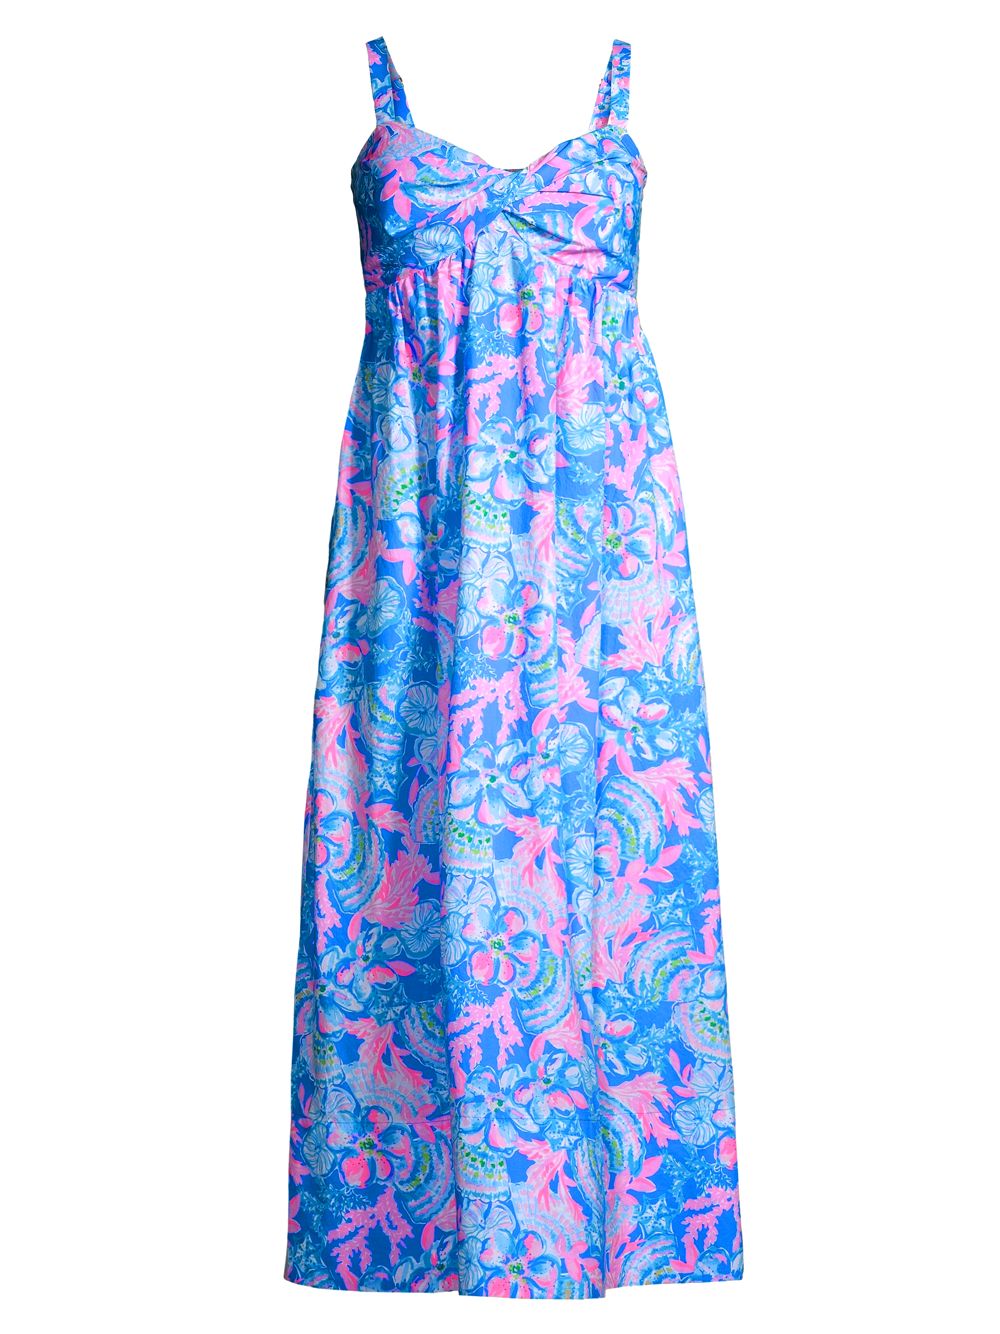 Хлопковое платье-миди Azora с цветочным принтом Lilly Pulitzer, синий